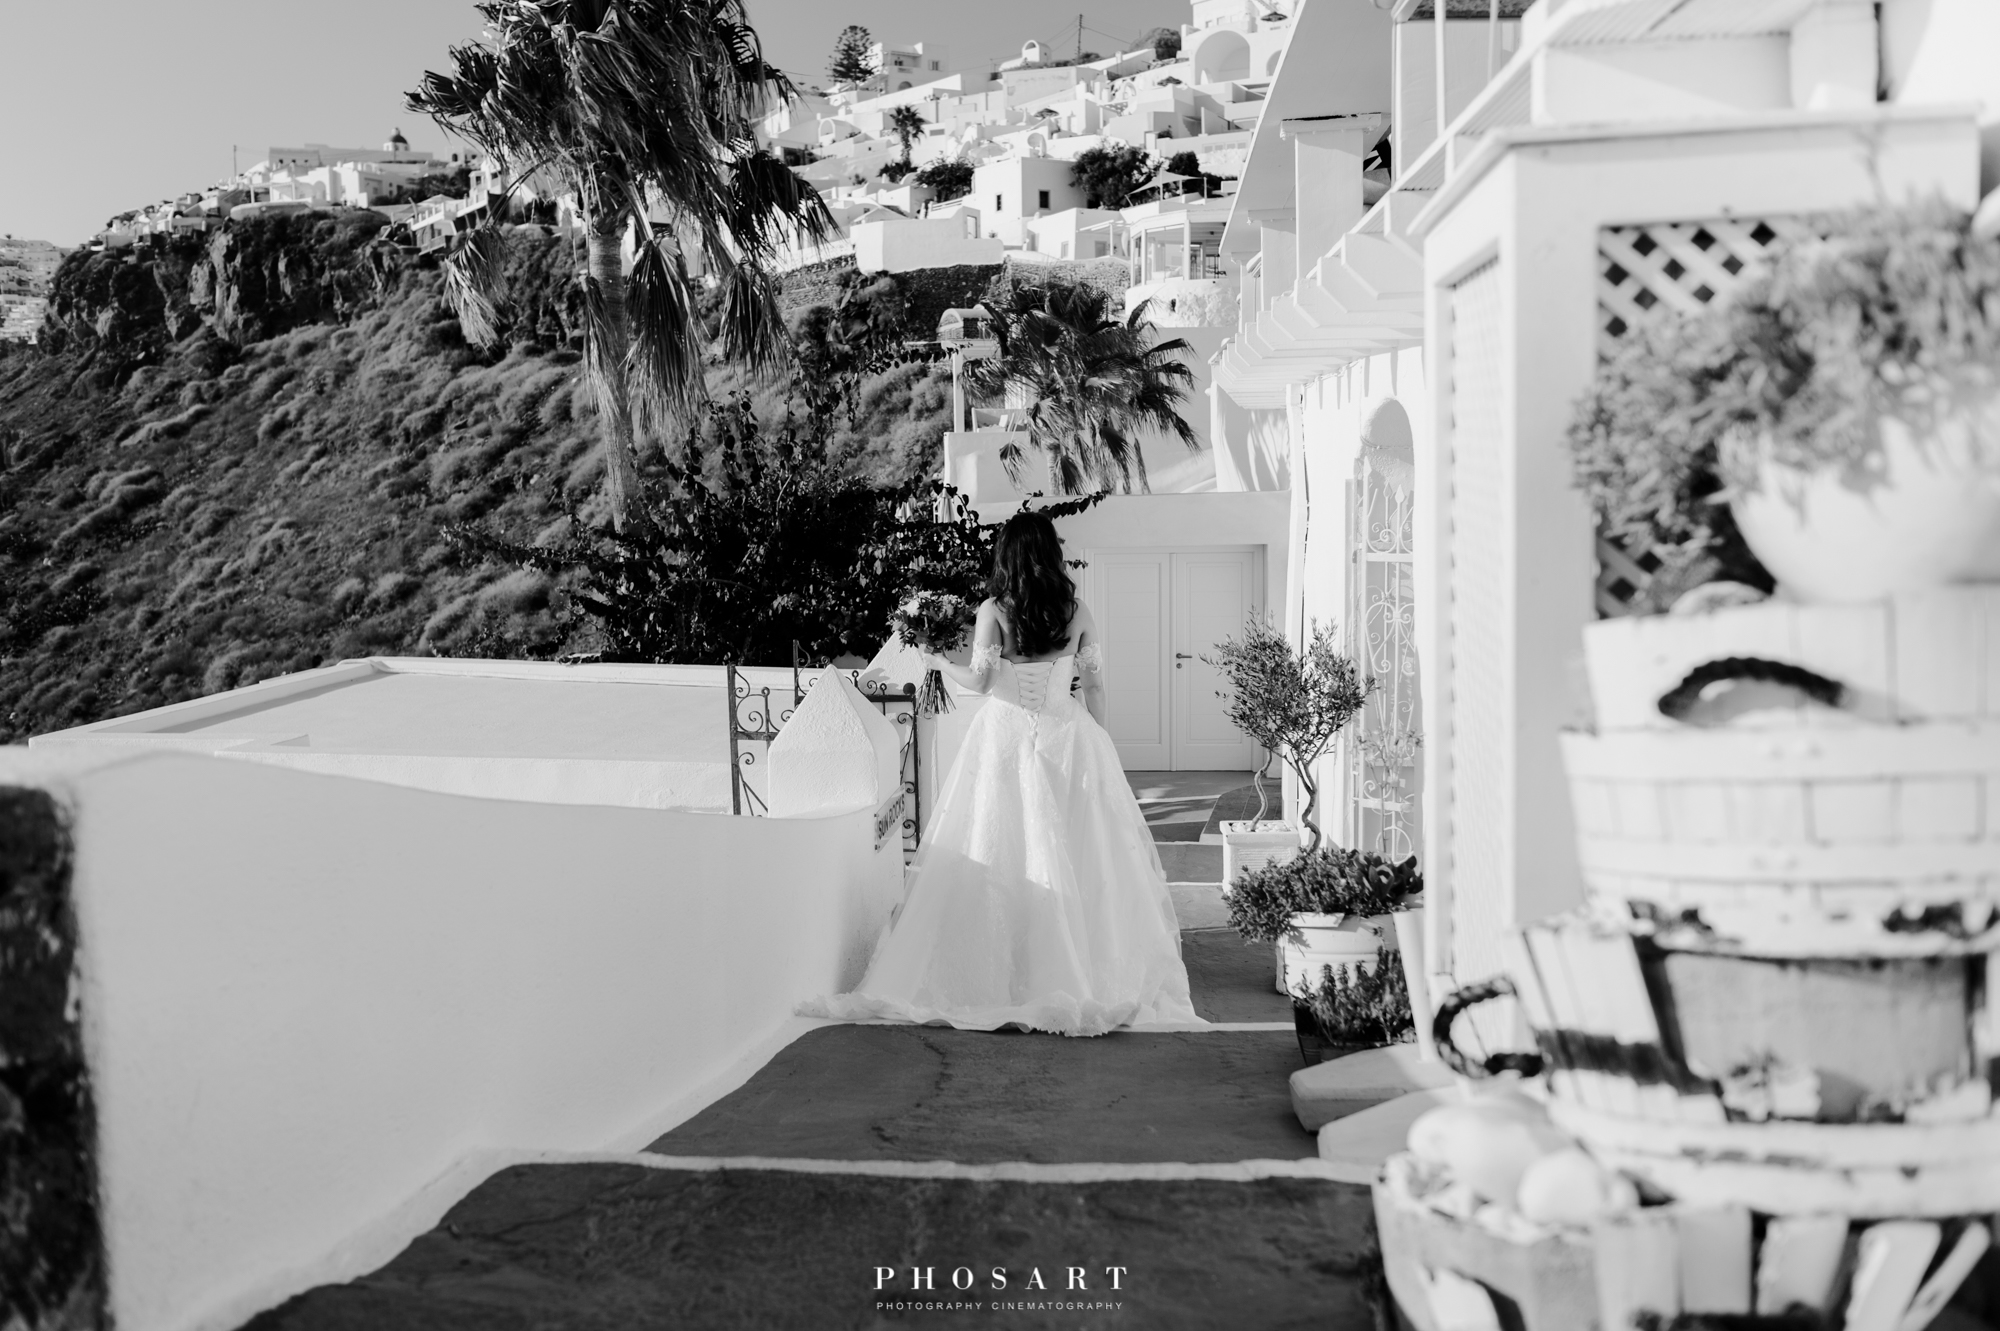 Α bride walking in the alleys of the caldera, Santorini, in black and white photo